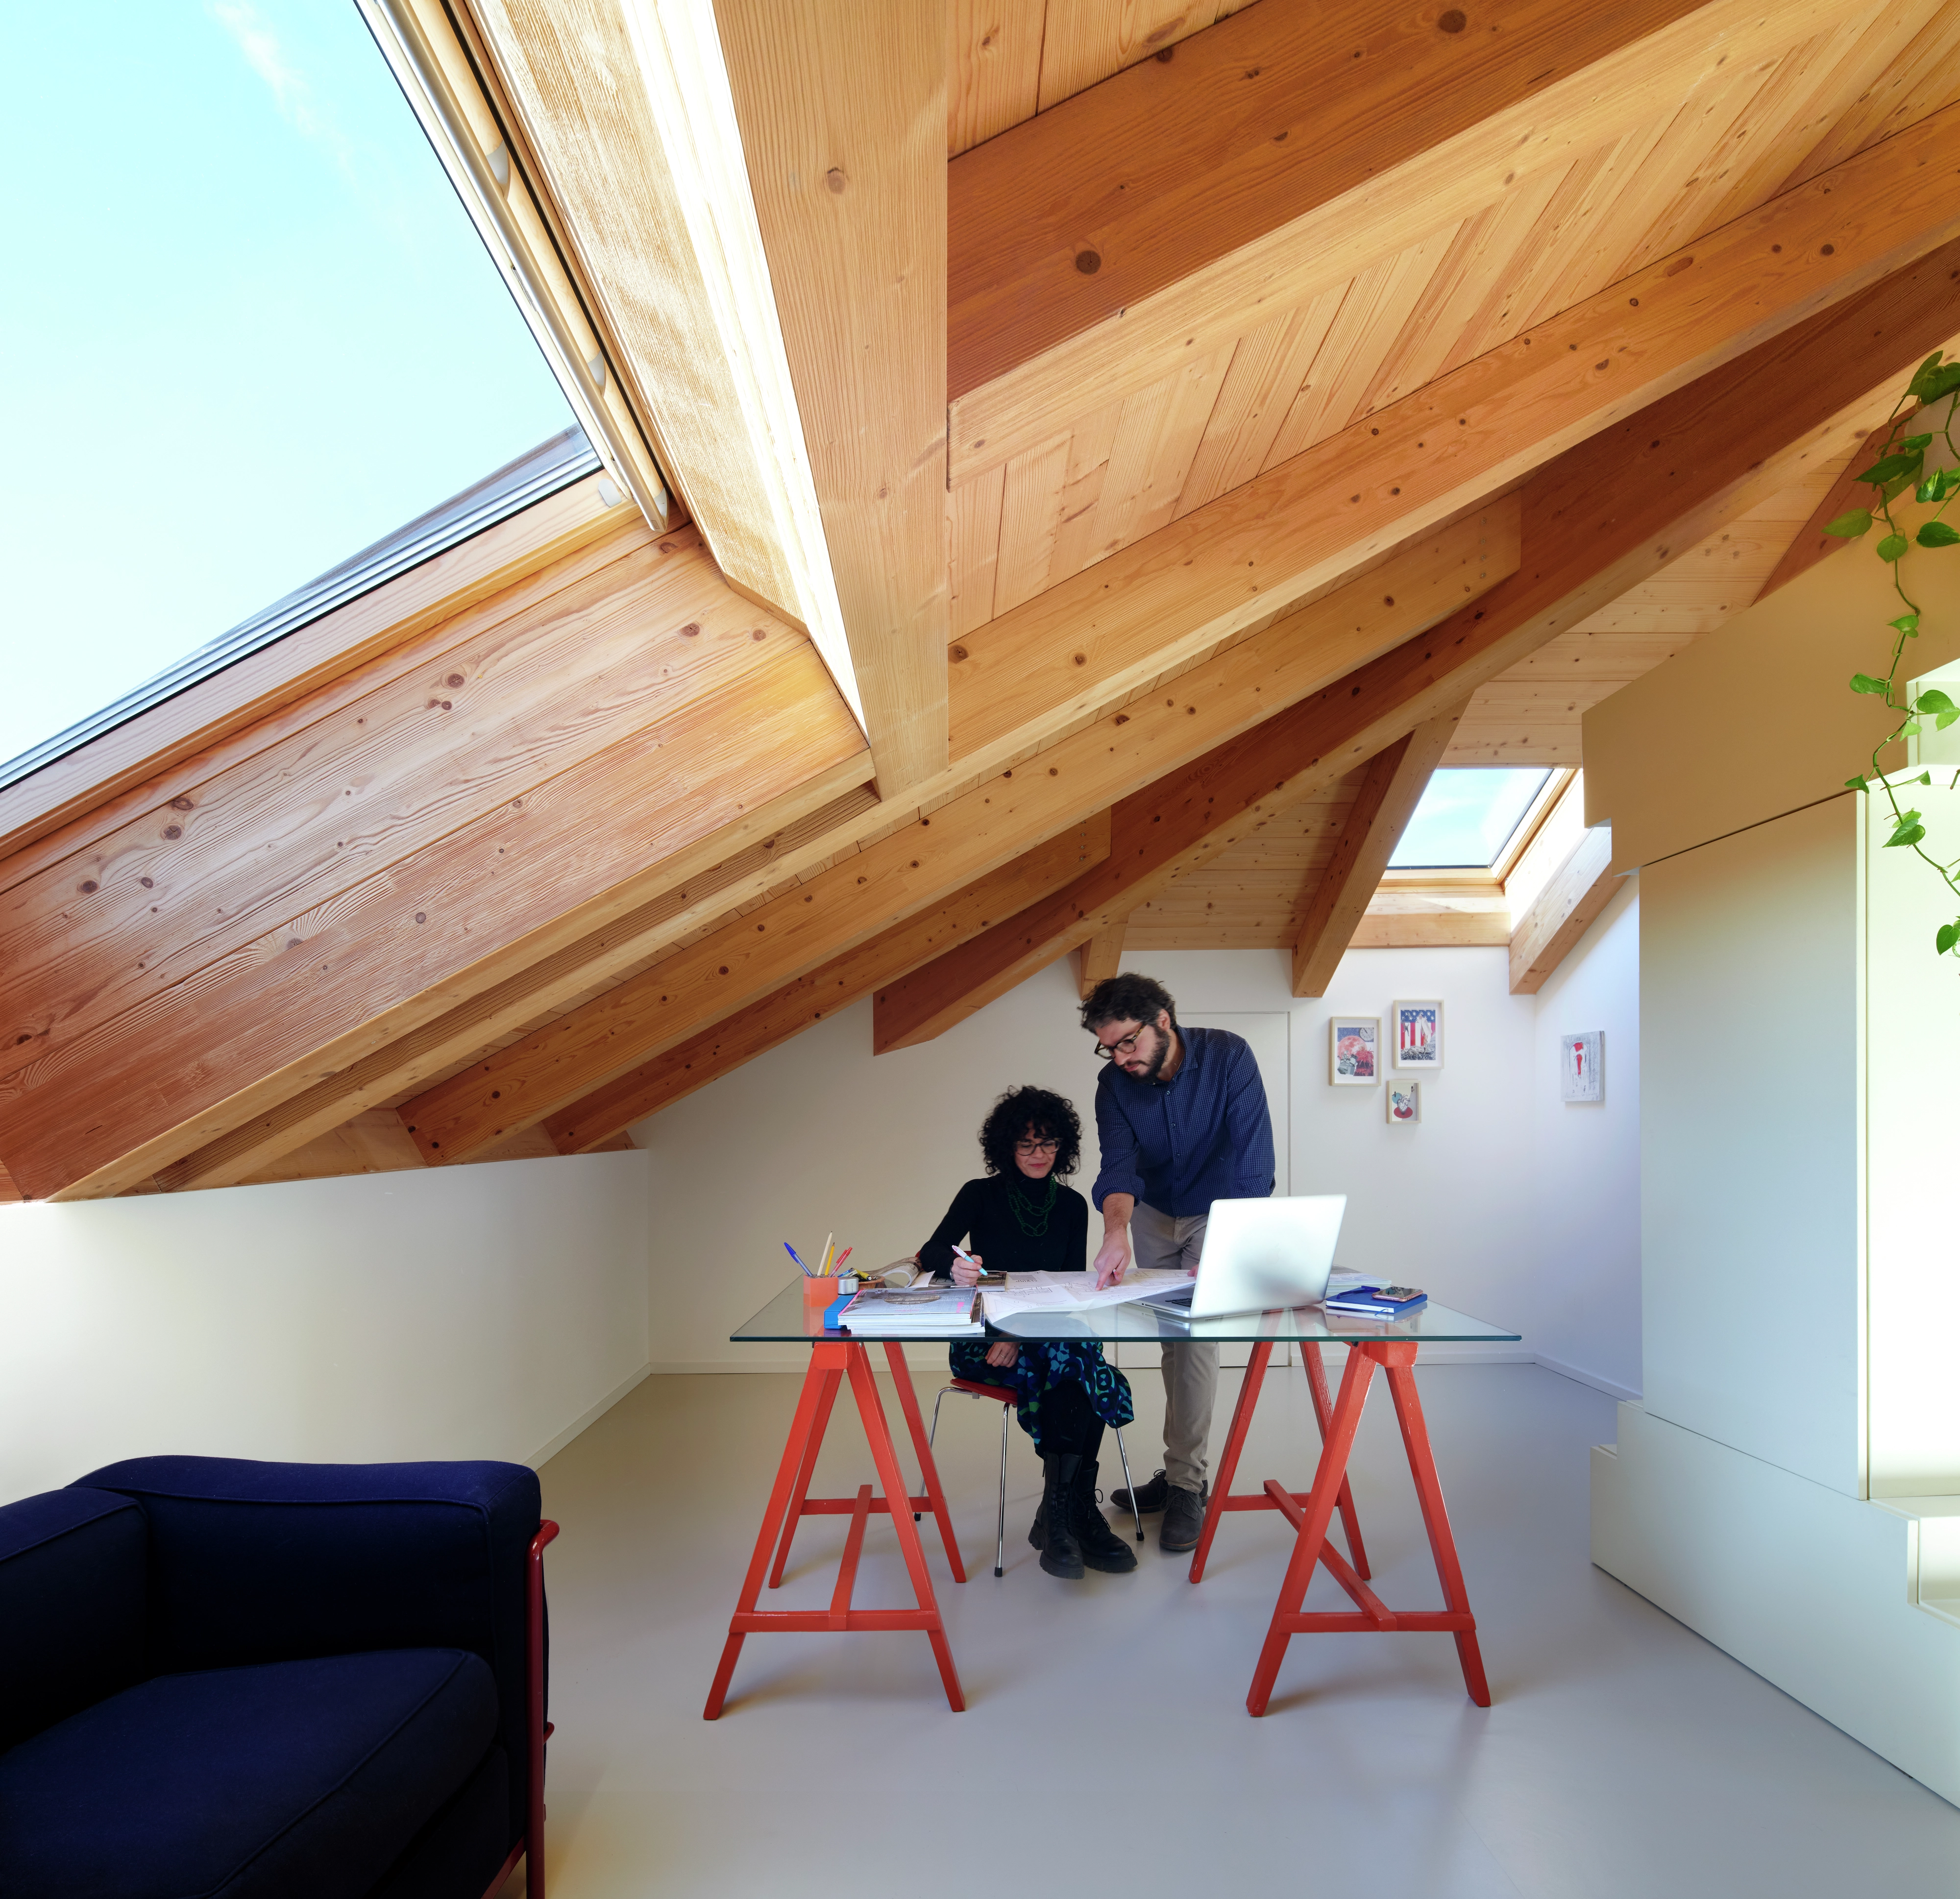 Accogliente ufficio domestico mansarda con travi in legno e finestra per tetti VELUX, scrivania moderna e decorazione minimalista.